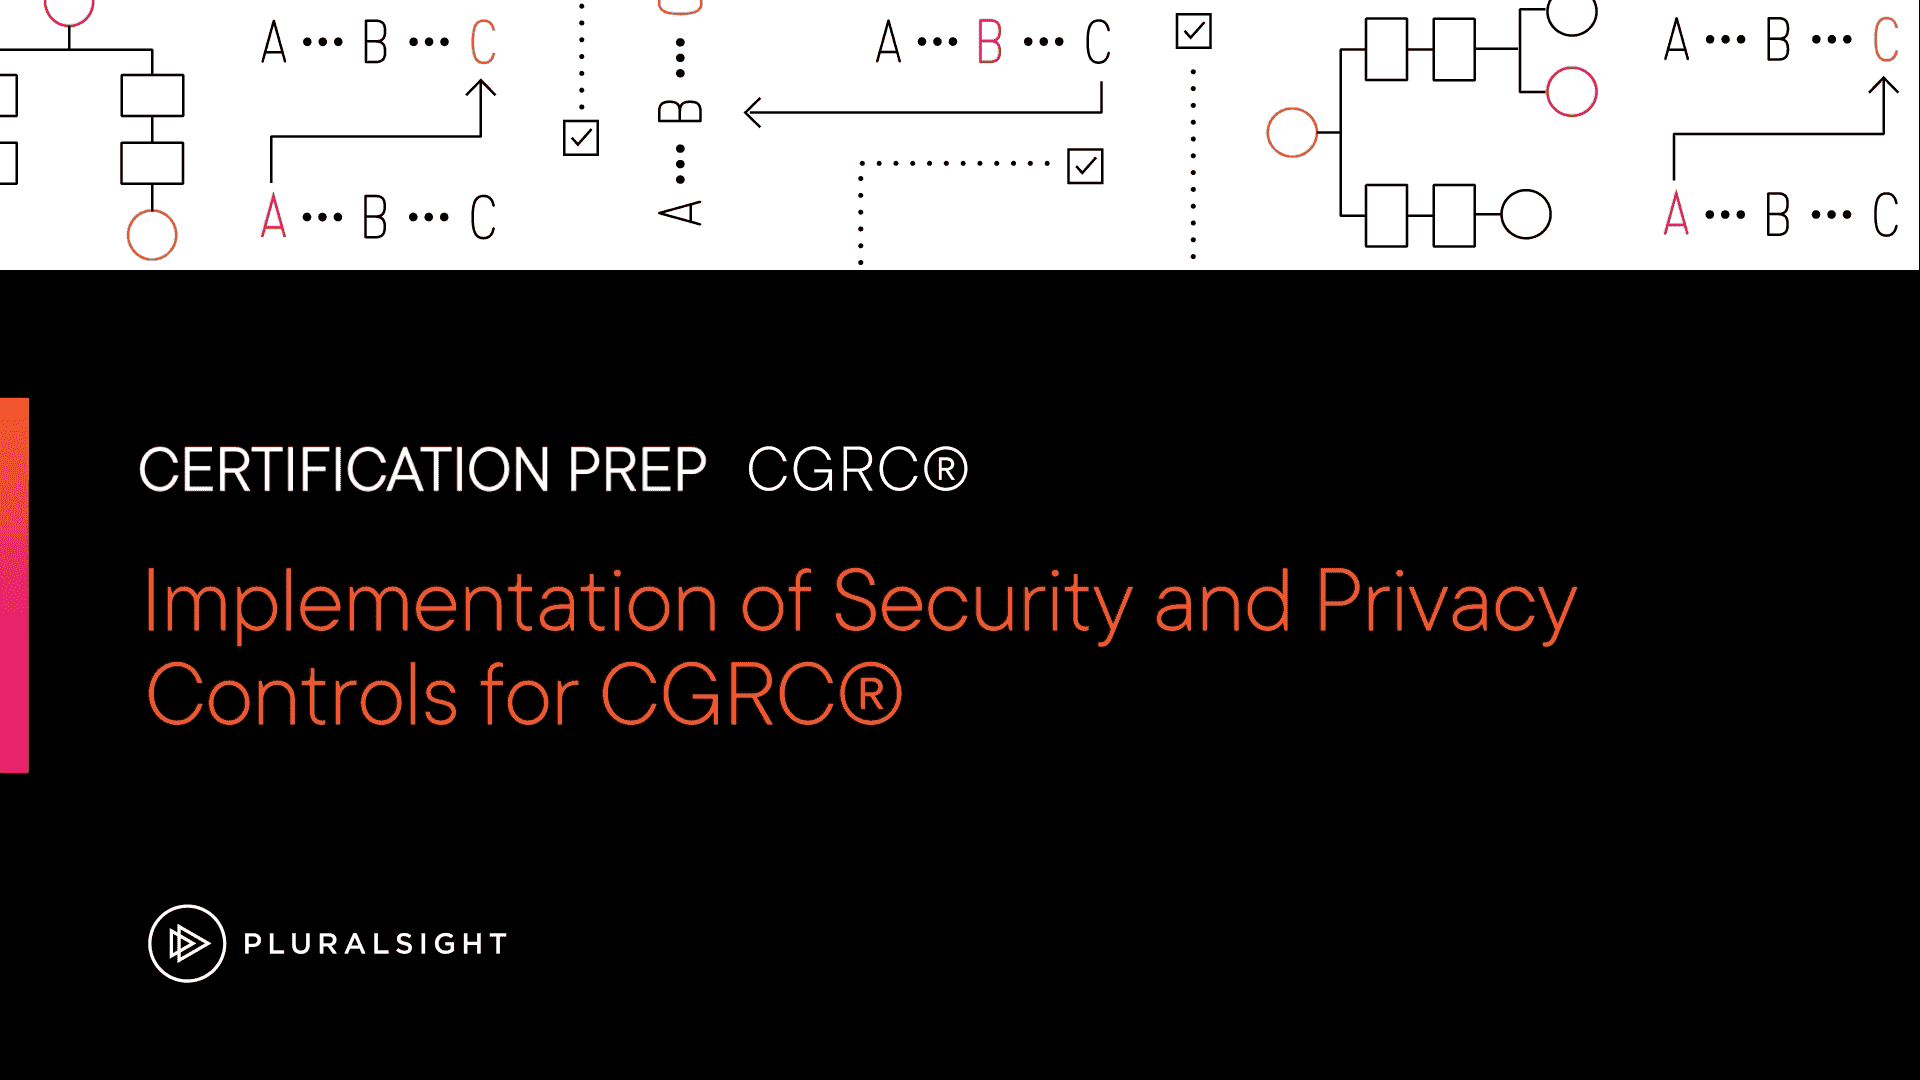 آموزش پیاده سازی کنترل های امنیتی و حریم خصوصی برای CGRC™